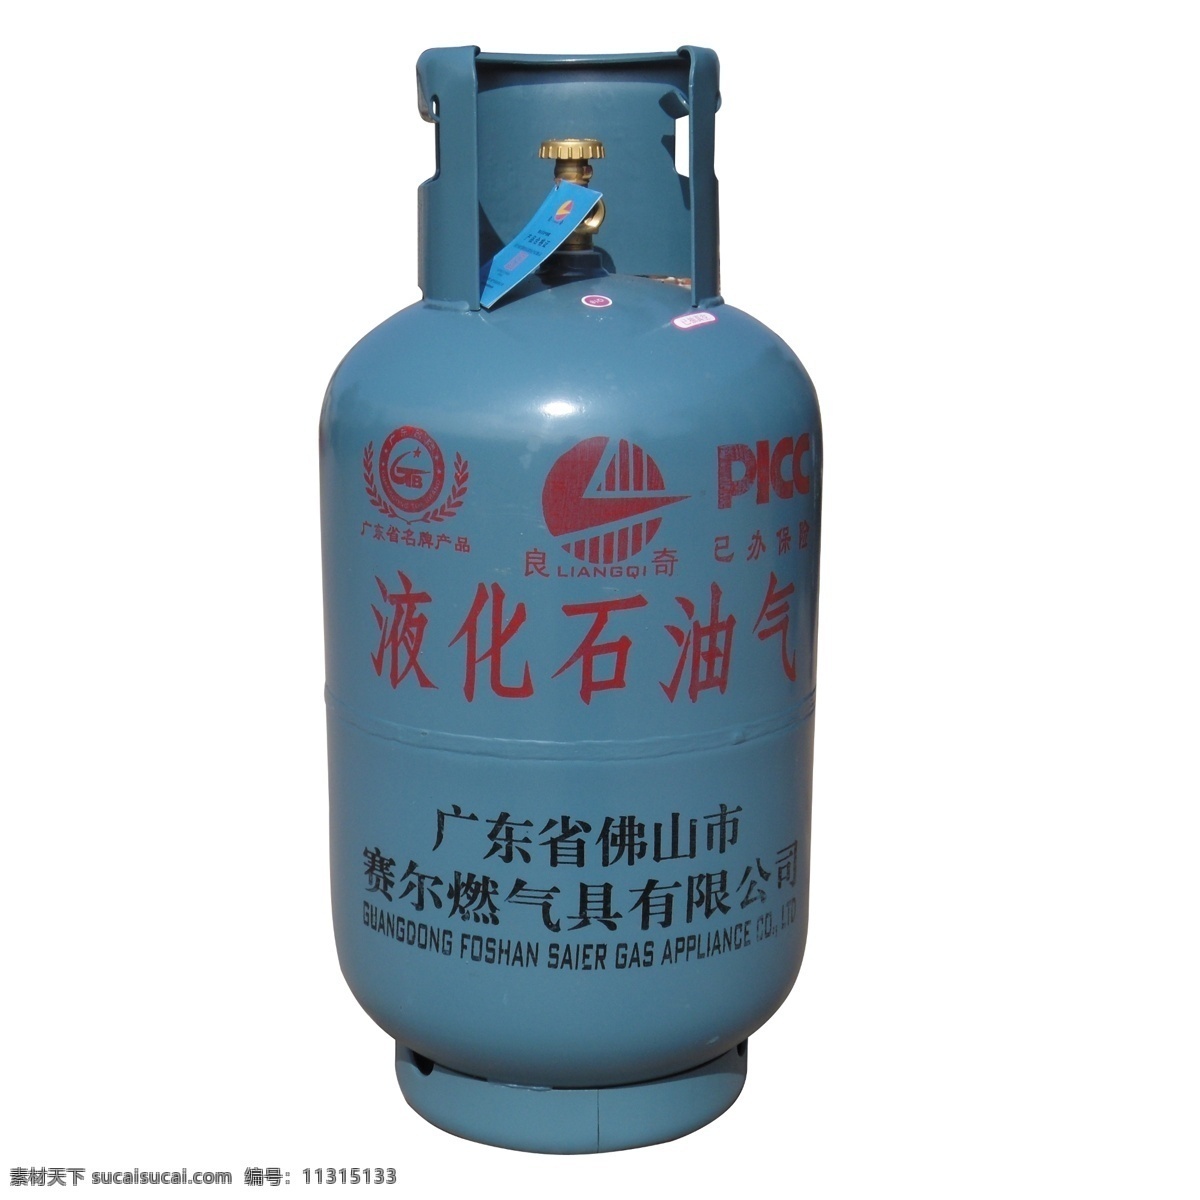 液化石油瓶 煤气瓶 燃气瓶 燃气罐 天然气 生活百科